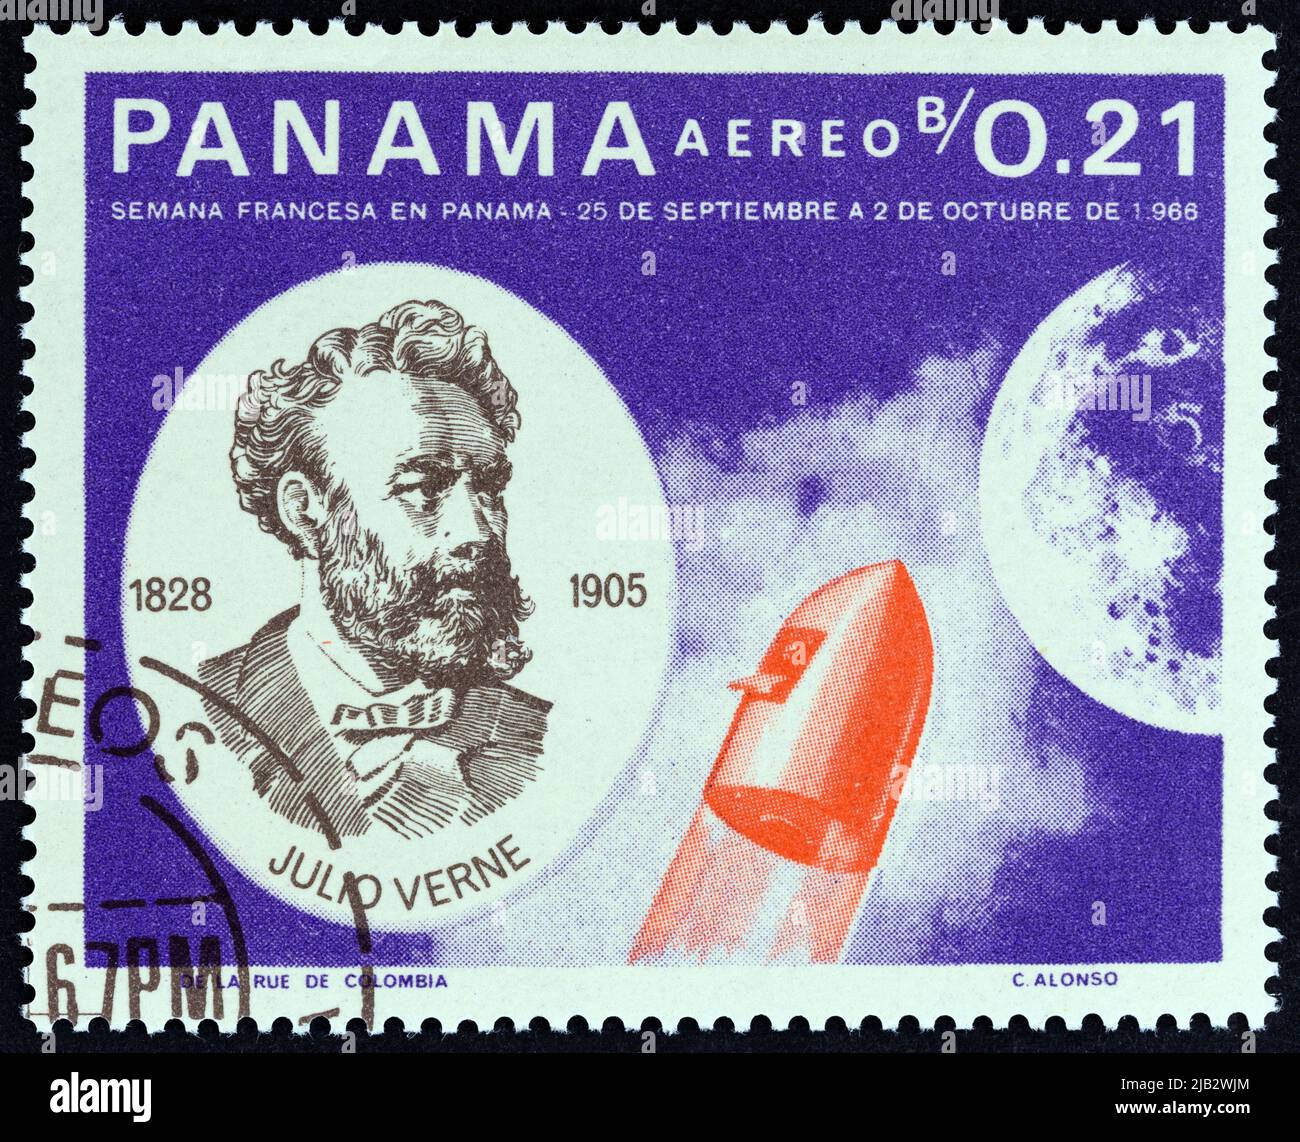 PANAMA - UM 1966: Eine in Panama gedruckte Marke zeigt Jules Verne und Rakete, um 1966. Stockfoto